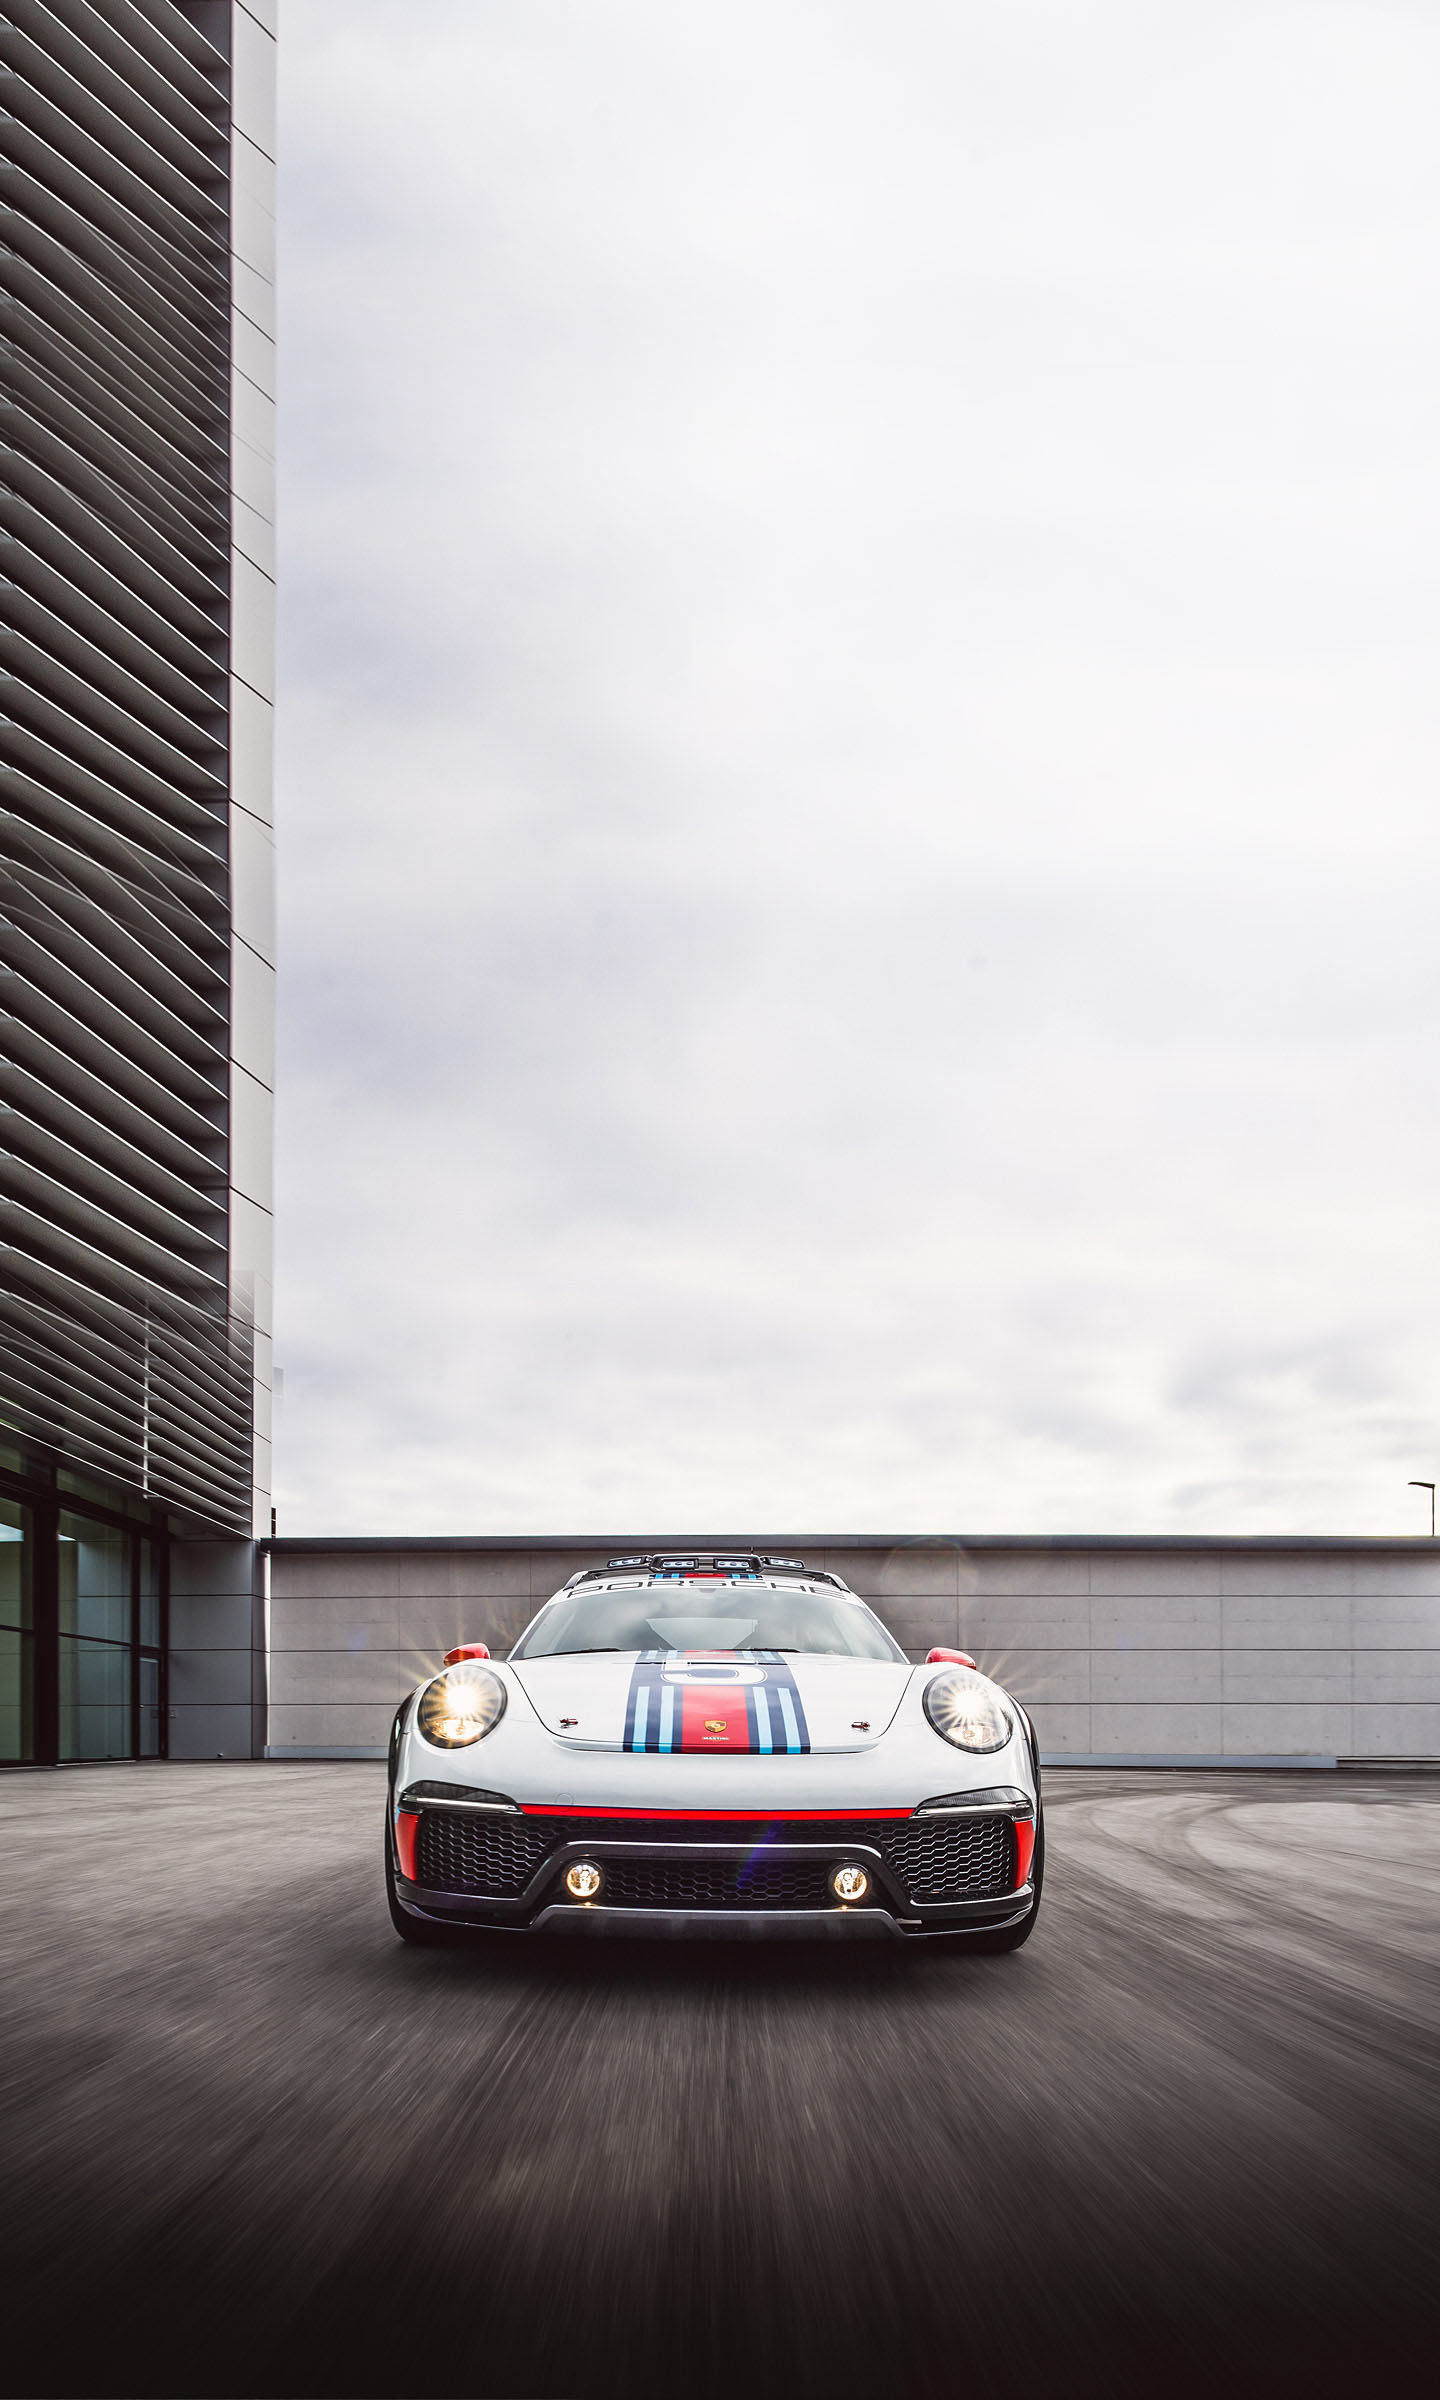  2012 Porsche 911 Vision Safari Concept Wallpaper.